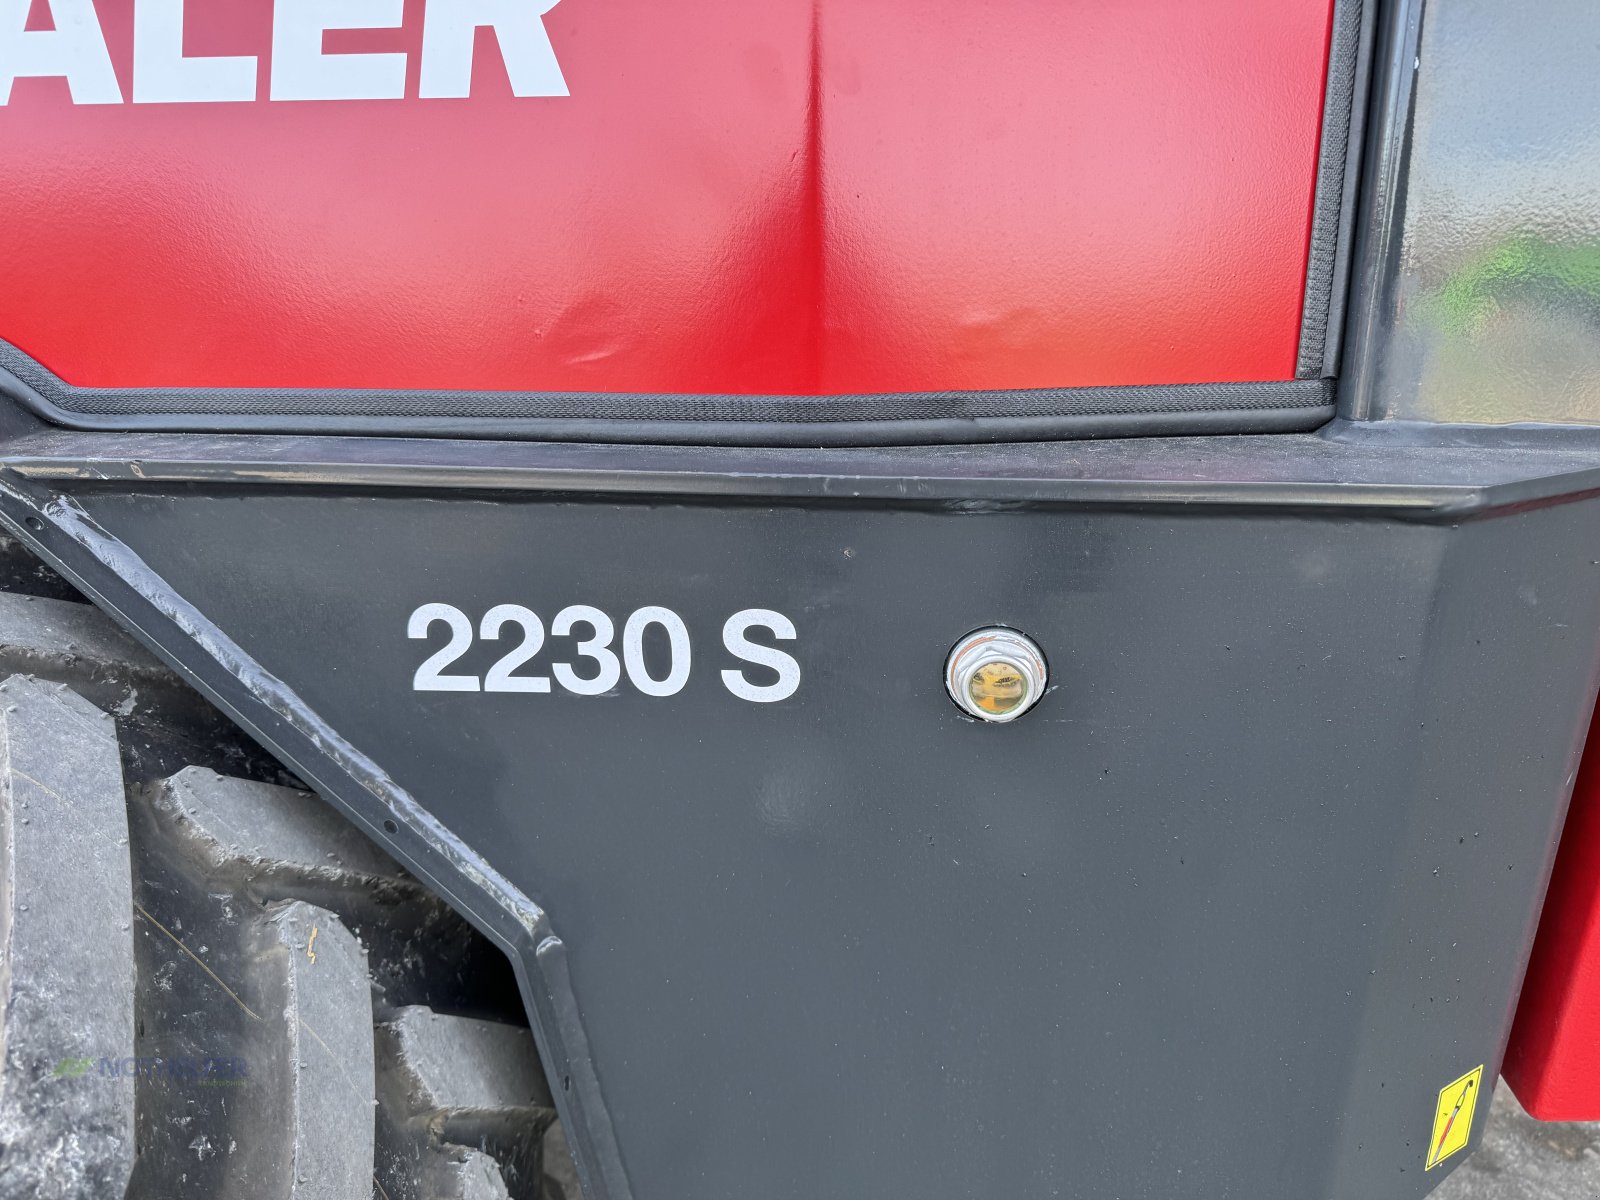 Hoflader des Typs Thaler 2230 S, Neumaschine in Pforzen (Bild 7)